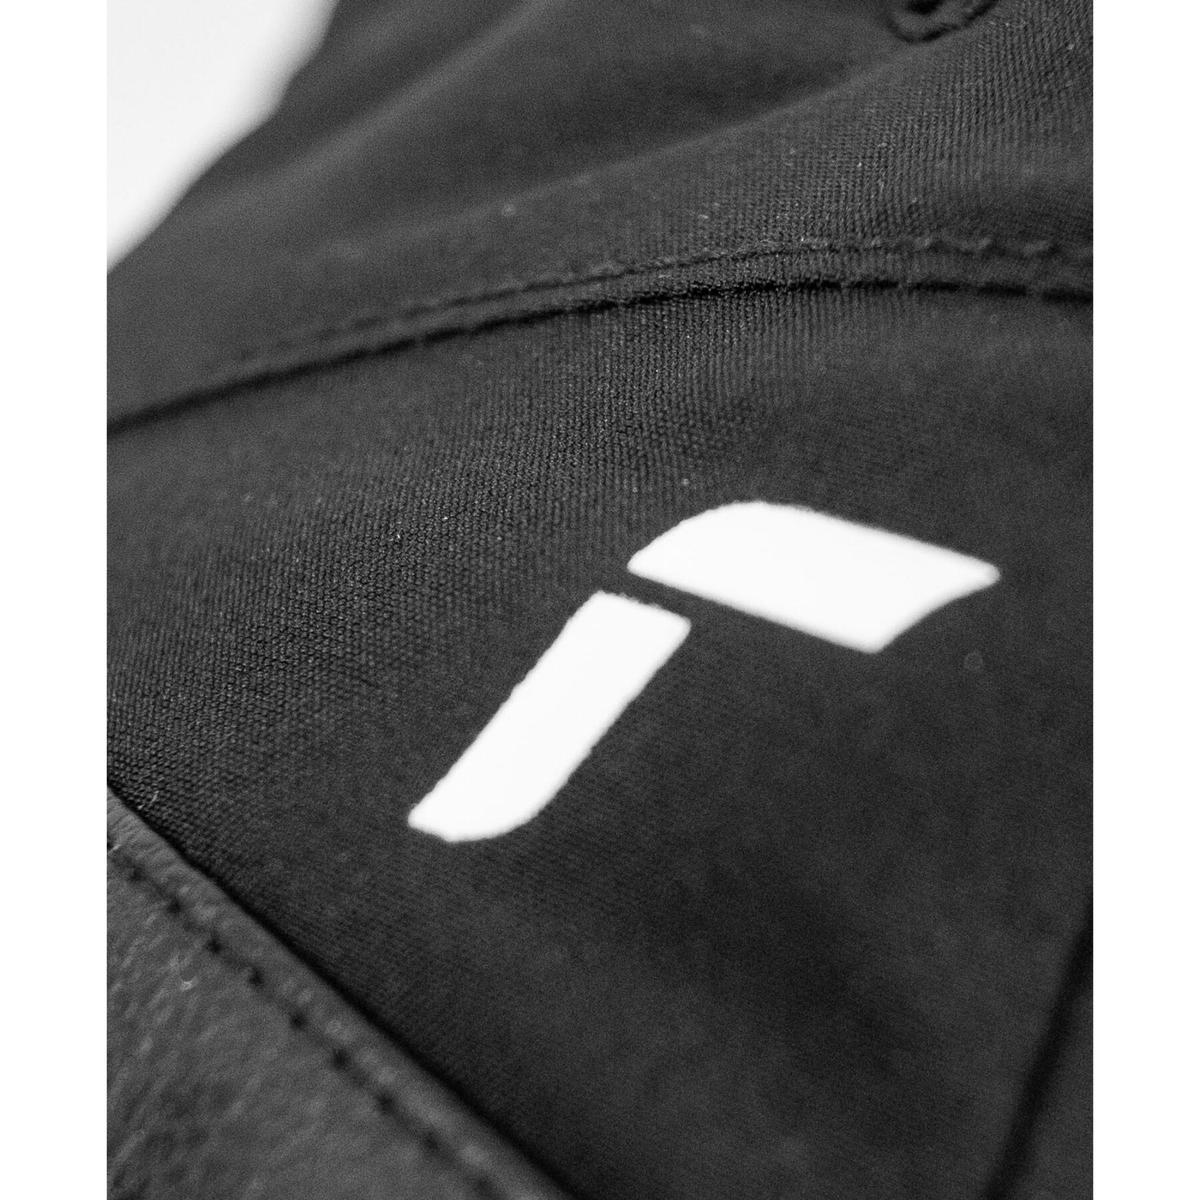 Reusch Fergus GTX skihandschoenen zwart/wit